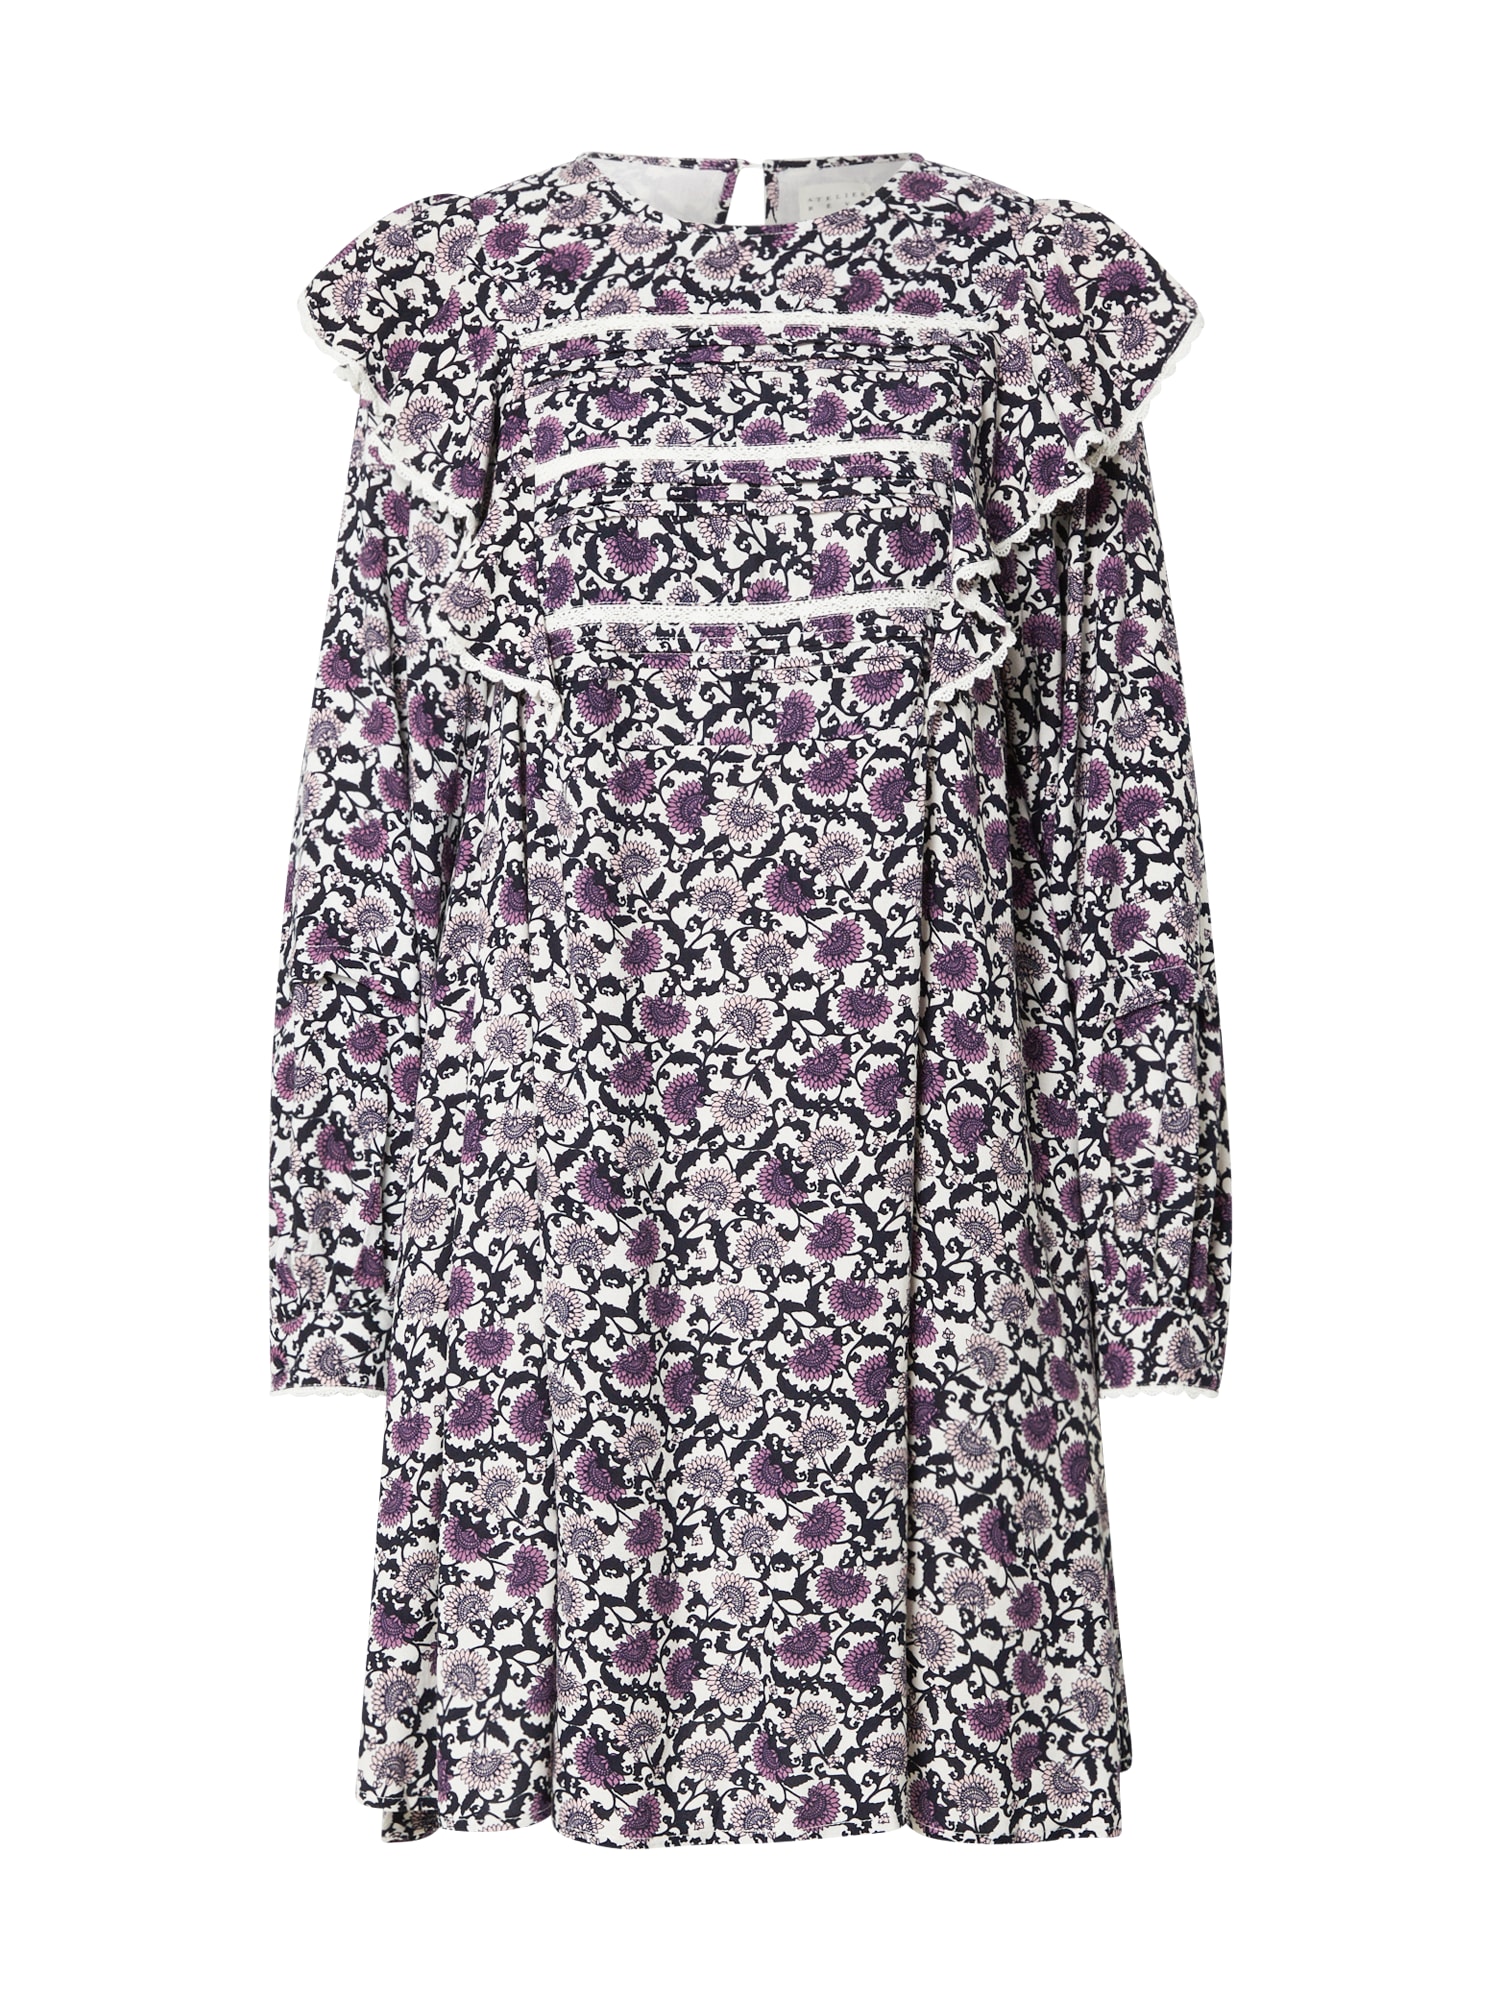 Košeľové šaty fialová púdrová čierna biela Atelier Rêve